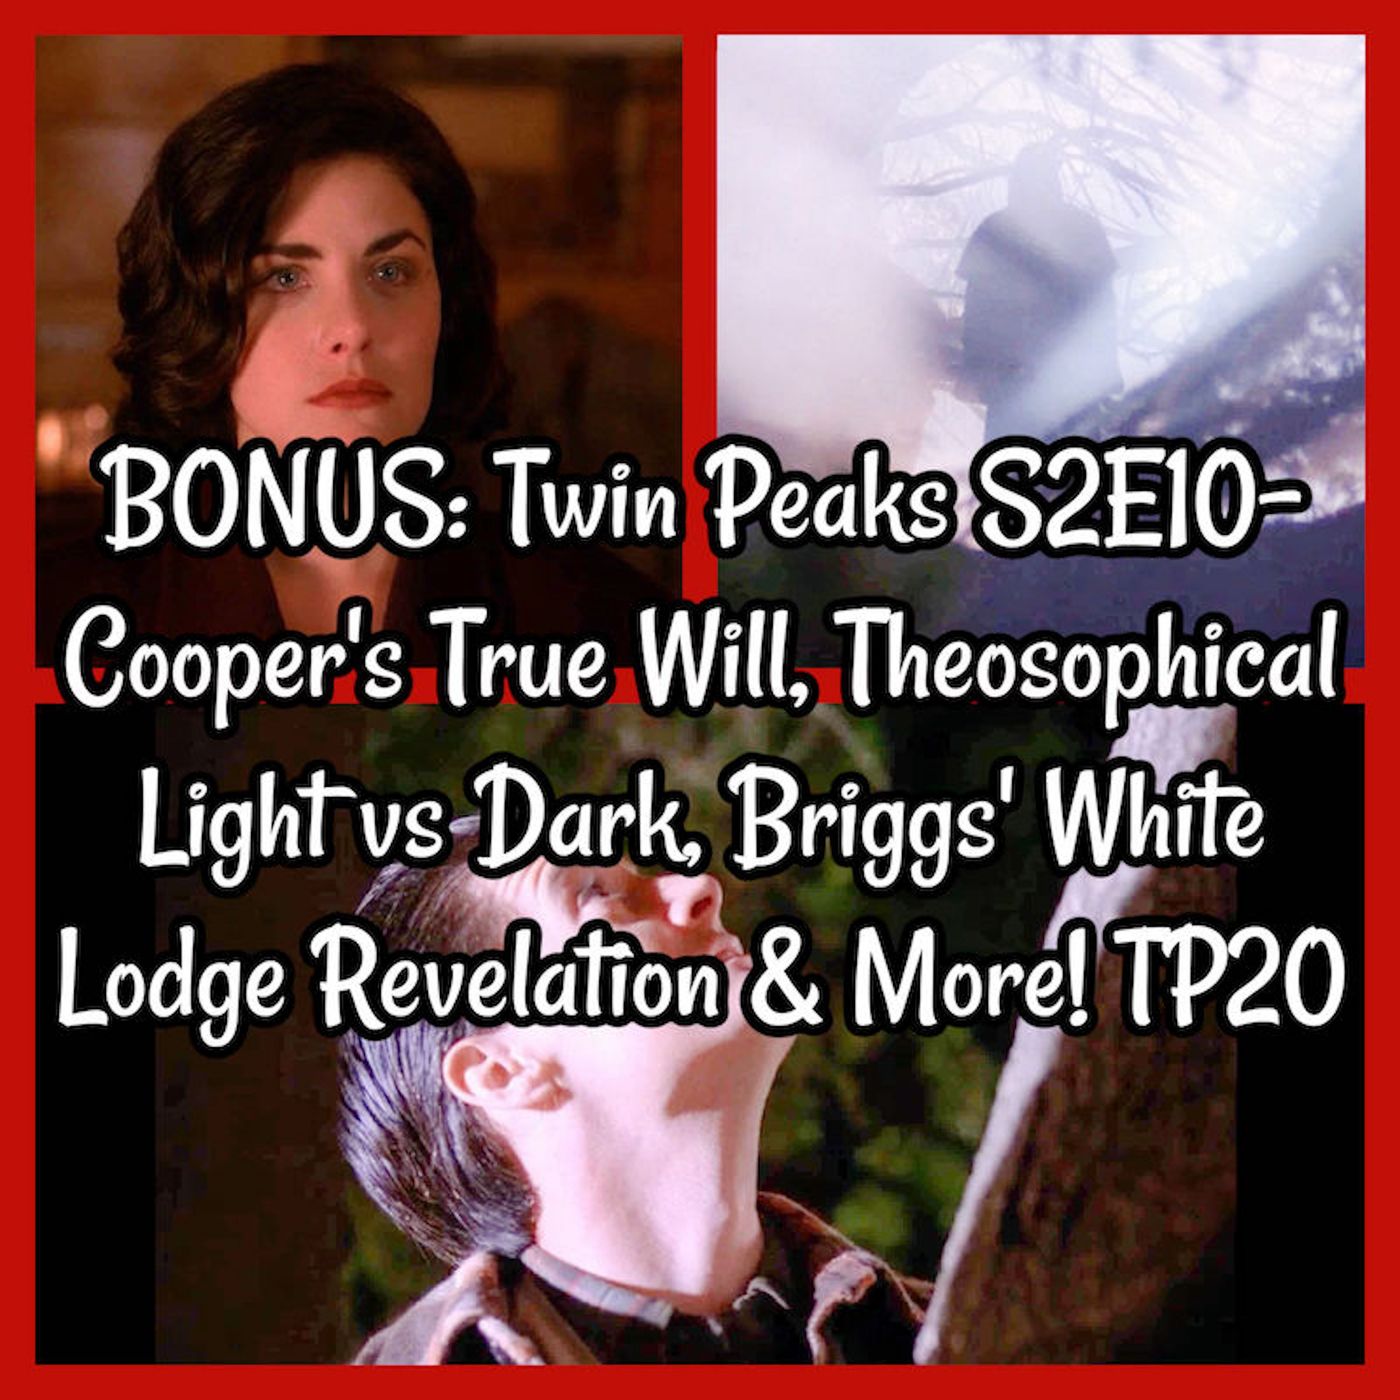 BONUS: Twin Peaks S2E10- Cooper's True Will, Theosophical Light vs Dark, Briggs' White Lodge Revelation & More! TP20